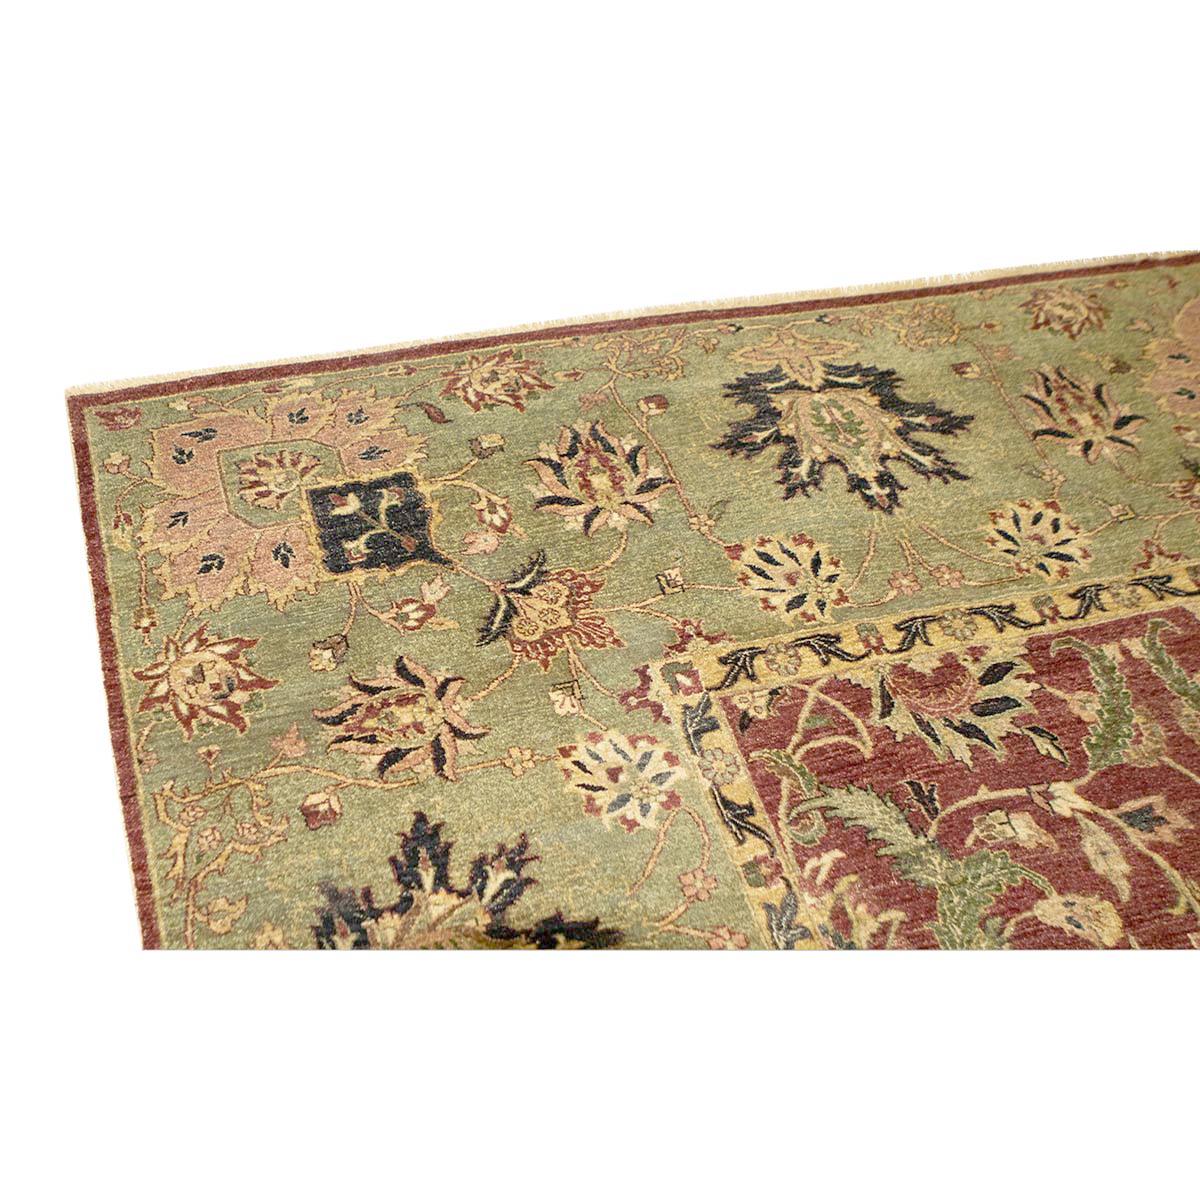 Les ateliers Hadji Jalili étaient réputés dans le monde entier pour leur production de tapis de Tabriz impeccables, de la fin du XIXe siècle au premier quart du XXe siècle (1880-1915). Situés autrefois à Tabriz (nord-ouest de la Perse), ces ateliers